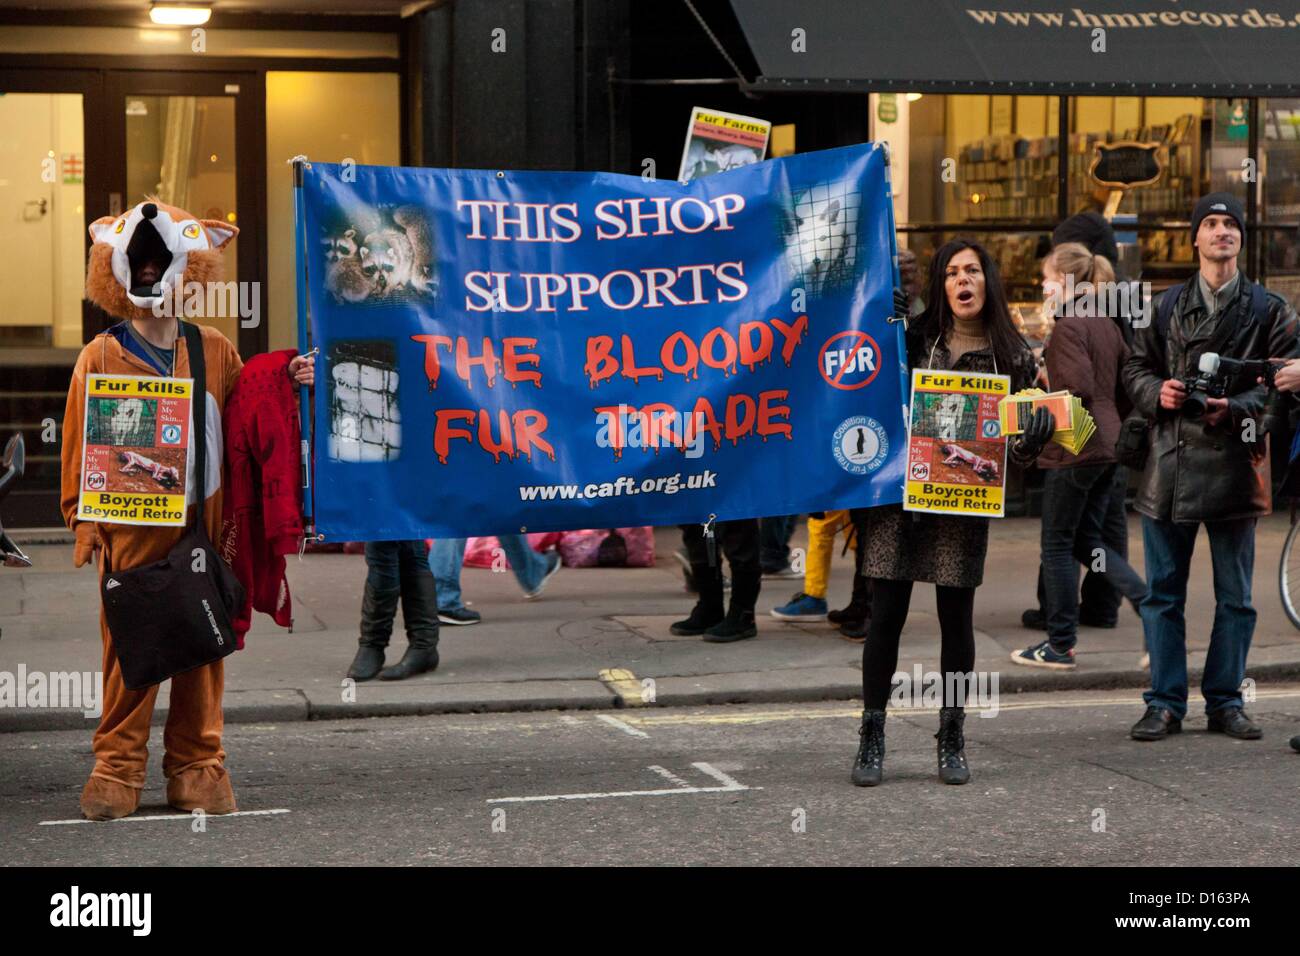 Londra, Regno Unito. 8 dicembre 2012 la coalizione di abolire il commercio di pellicce organizzato manifestazioni di protesta al di fuori del negozio Burberry sul Regents Street contro la vendita di pellicce. Si è passati poi a Great Marlborough Street dove hanno protestato fuori al di là di rétro. Foto Stock